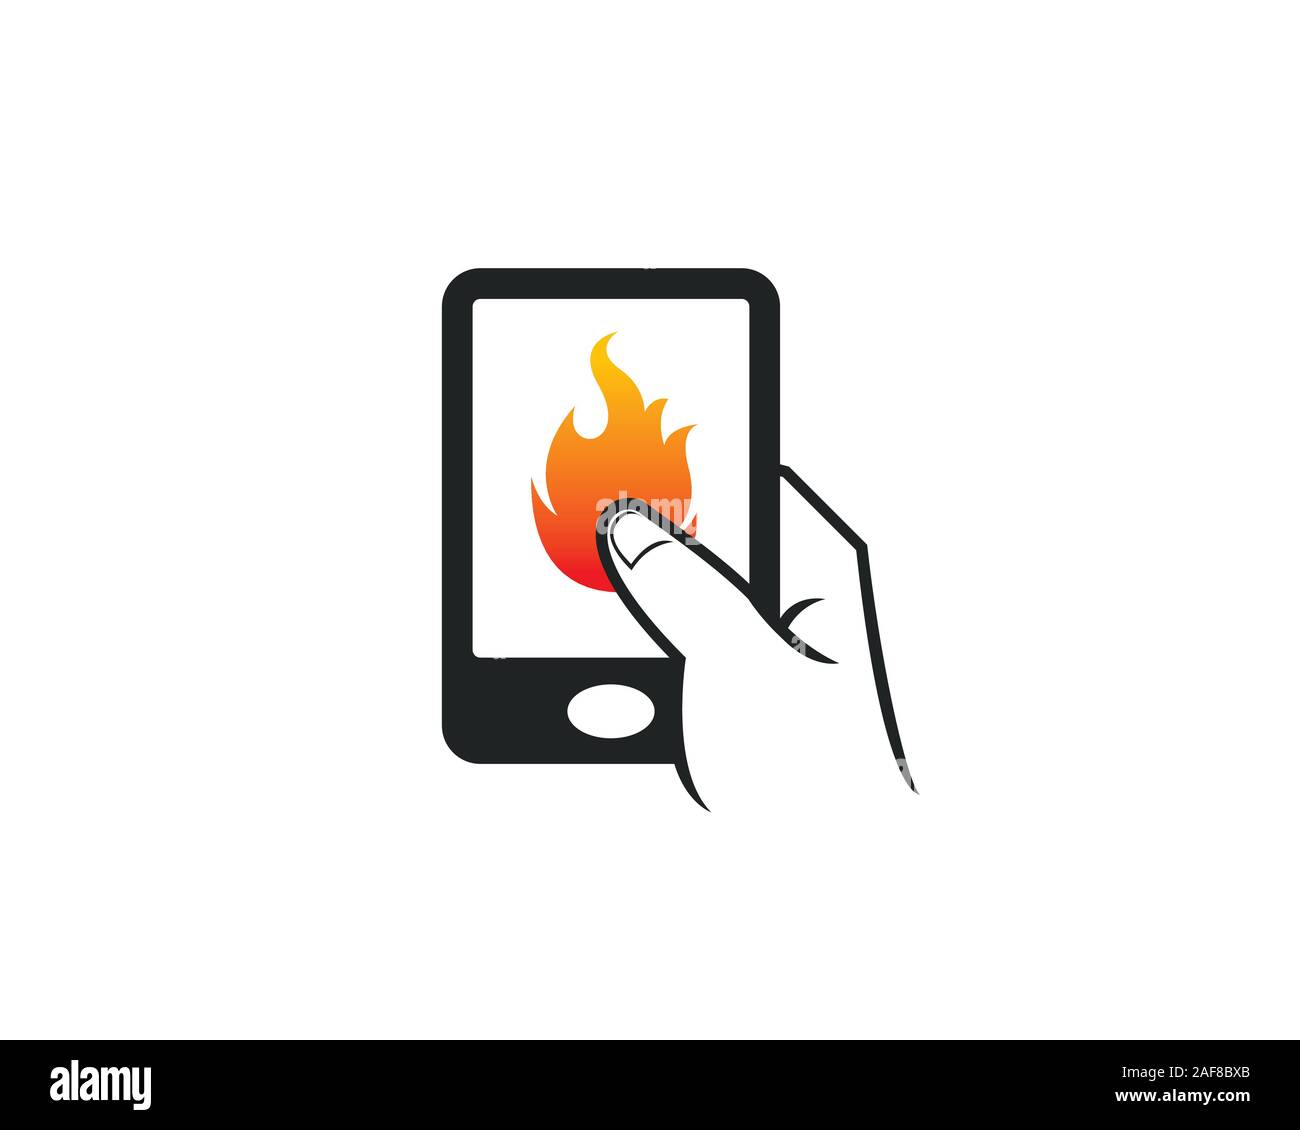 Handy touch Apps Symbol für Wärme heiße bbqrestaurant Grill Fire Company brennen Stock Vektor